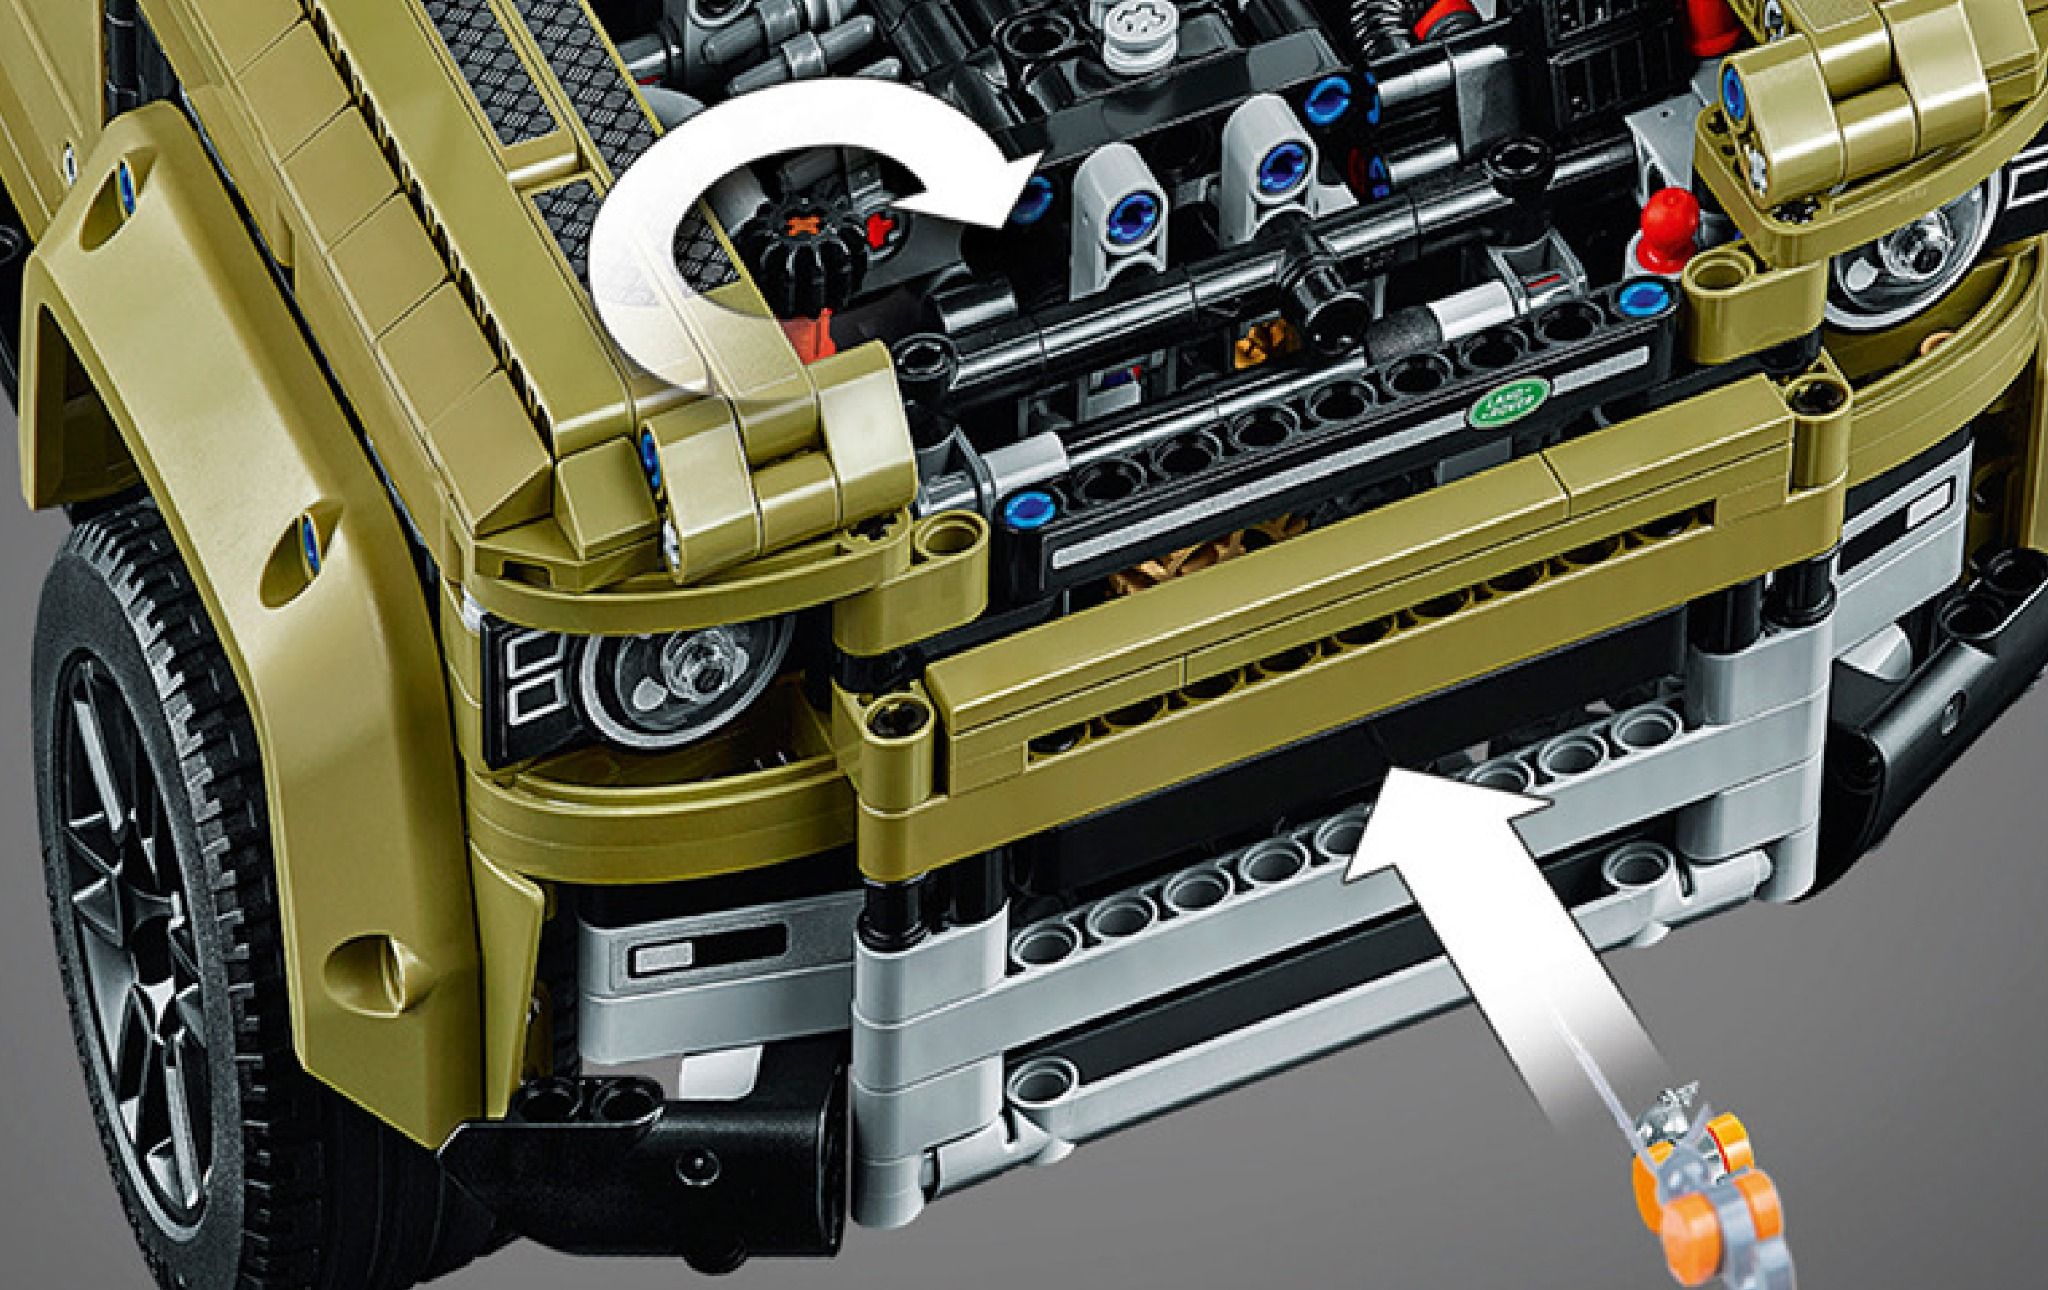  Mô hình xe ô tô lắp ghép Land Rover Defender 2573 pcs tỉ lệ 1:5 non lego LG017 